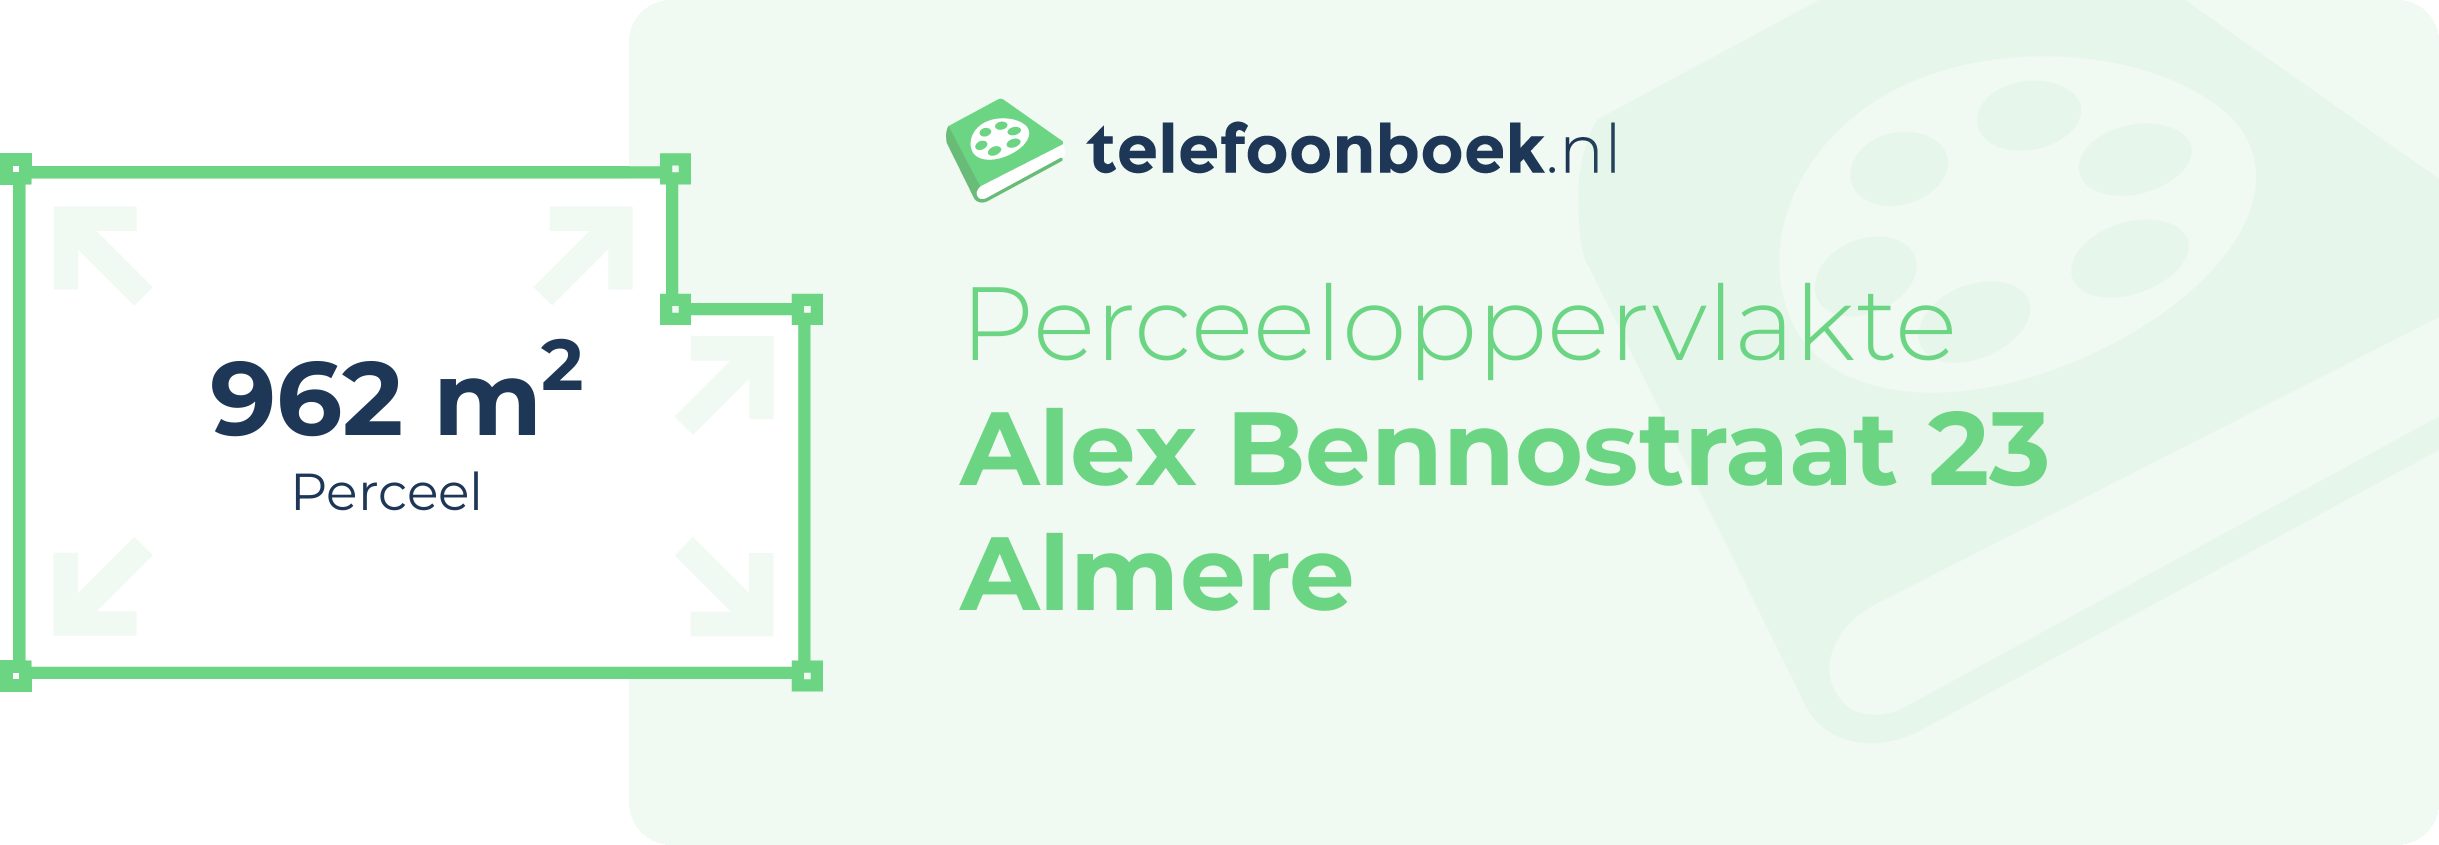 Perceeloppervlakte Alex Bennostraat 23 Almere